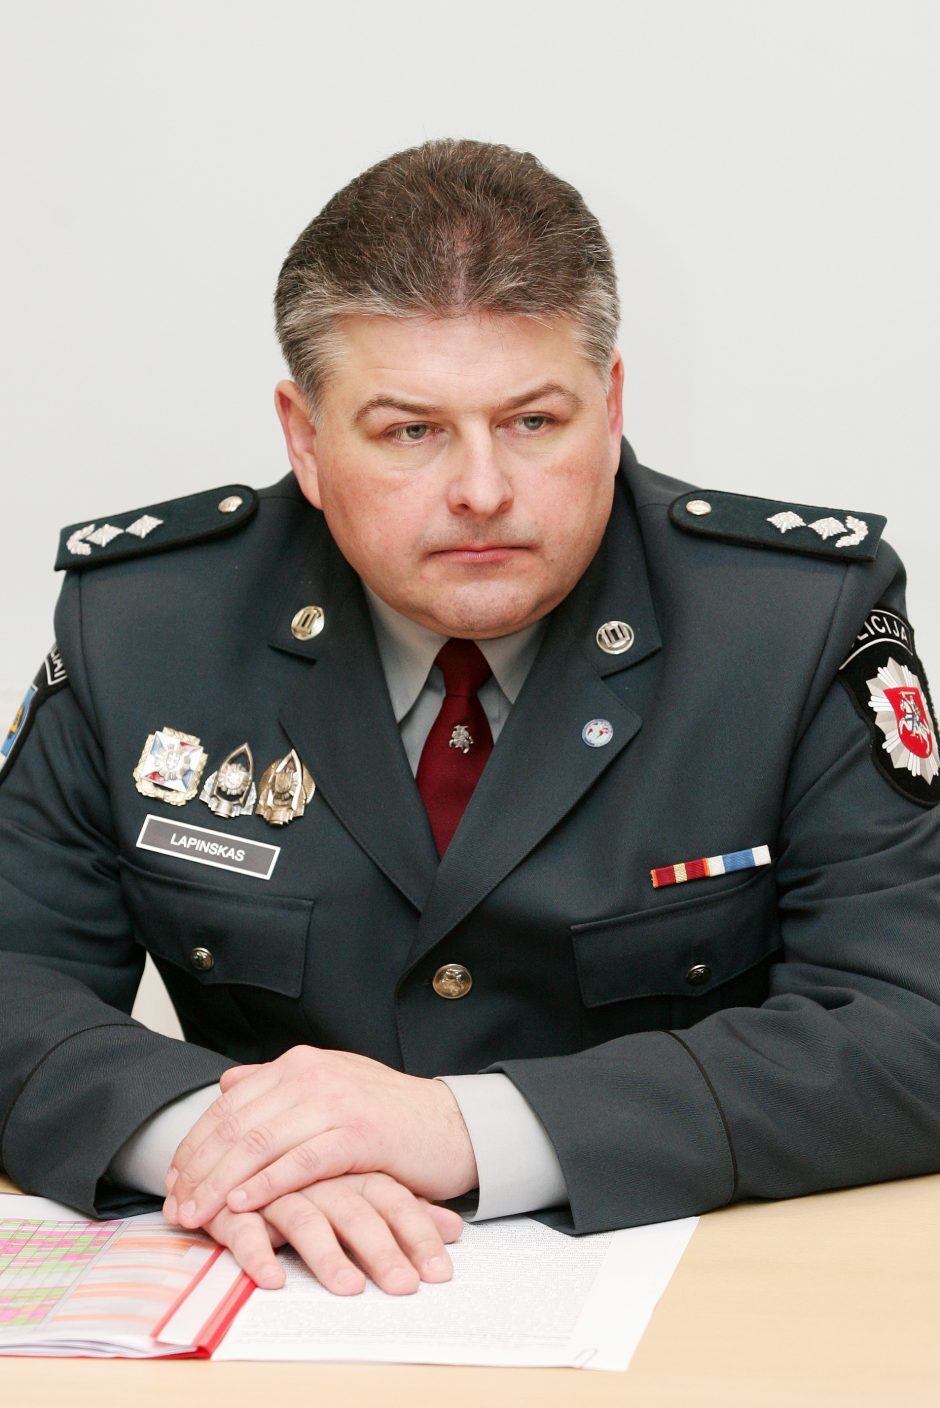 Vyriausybės atstovu dviejose apskrityse siūlomas buvęs policininkas E. Lapinskas